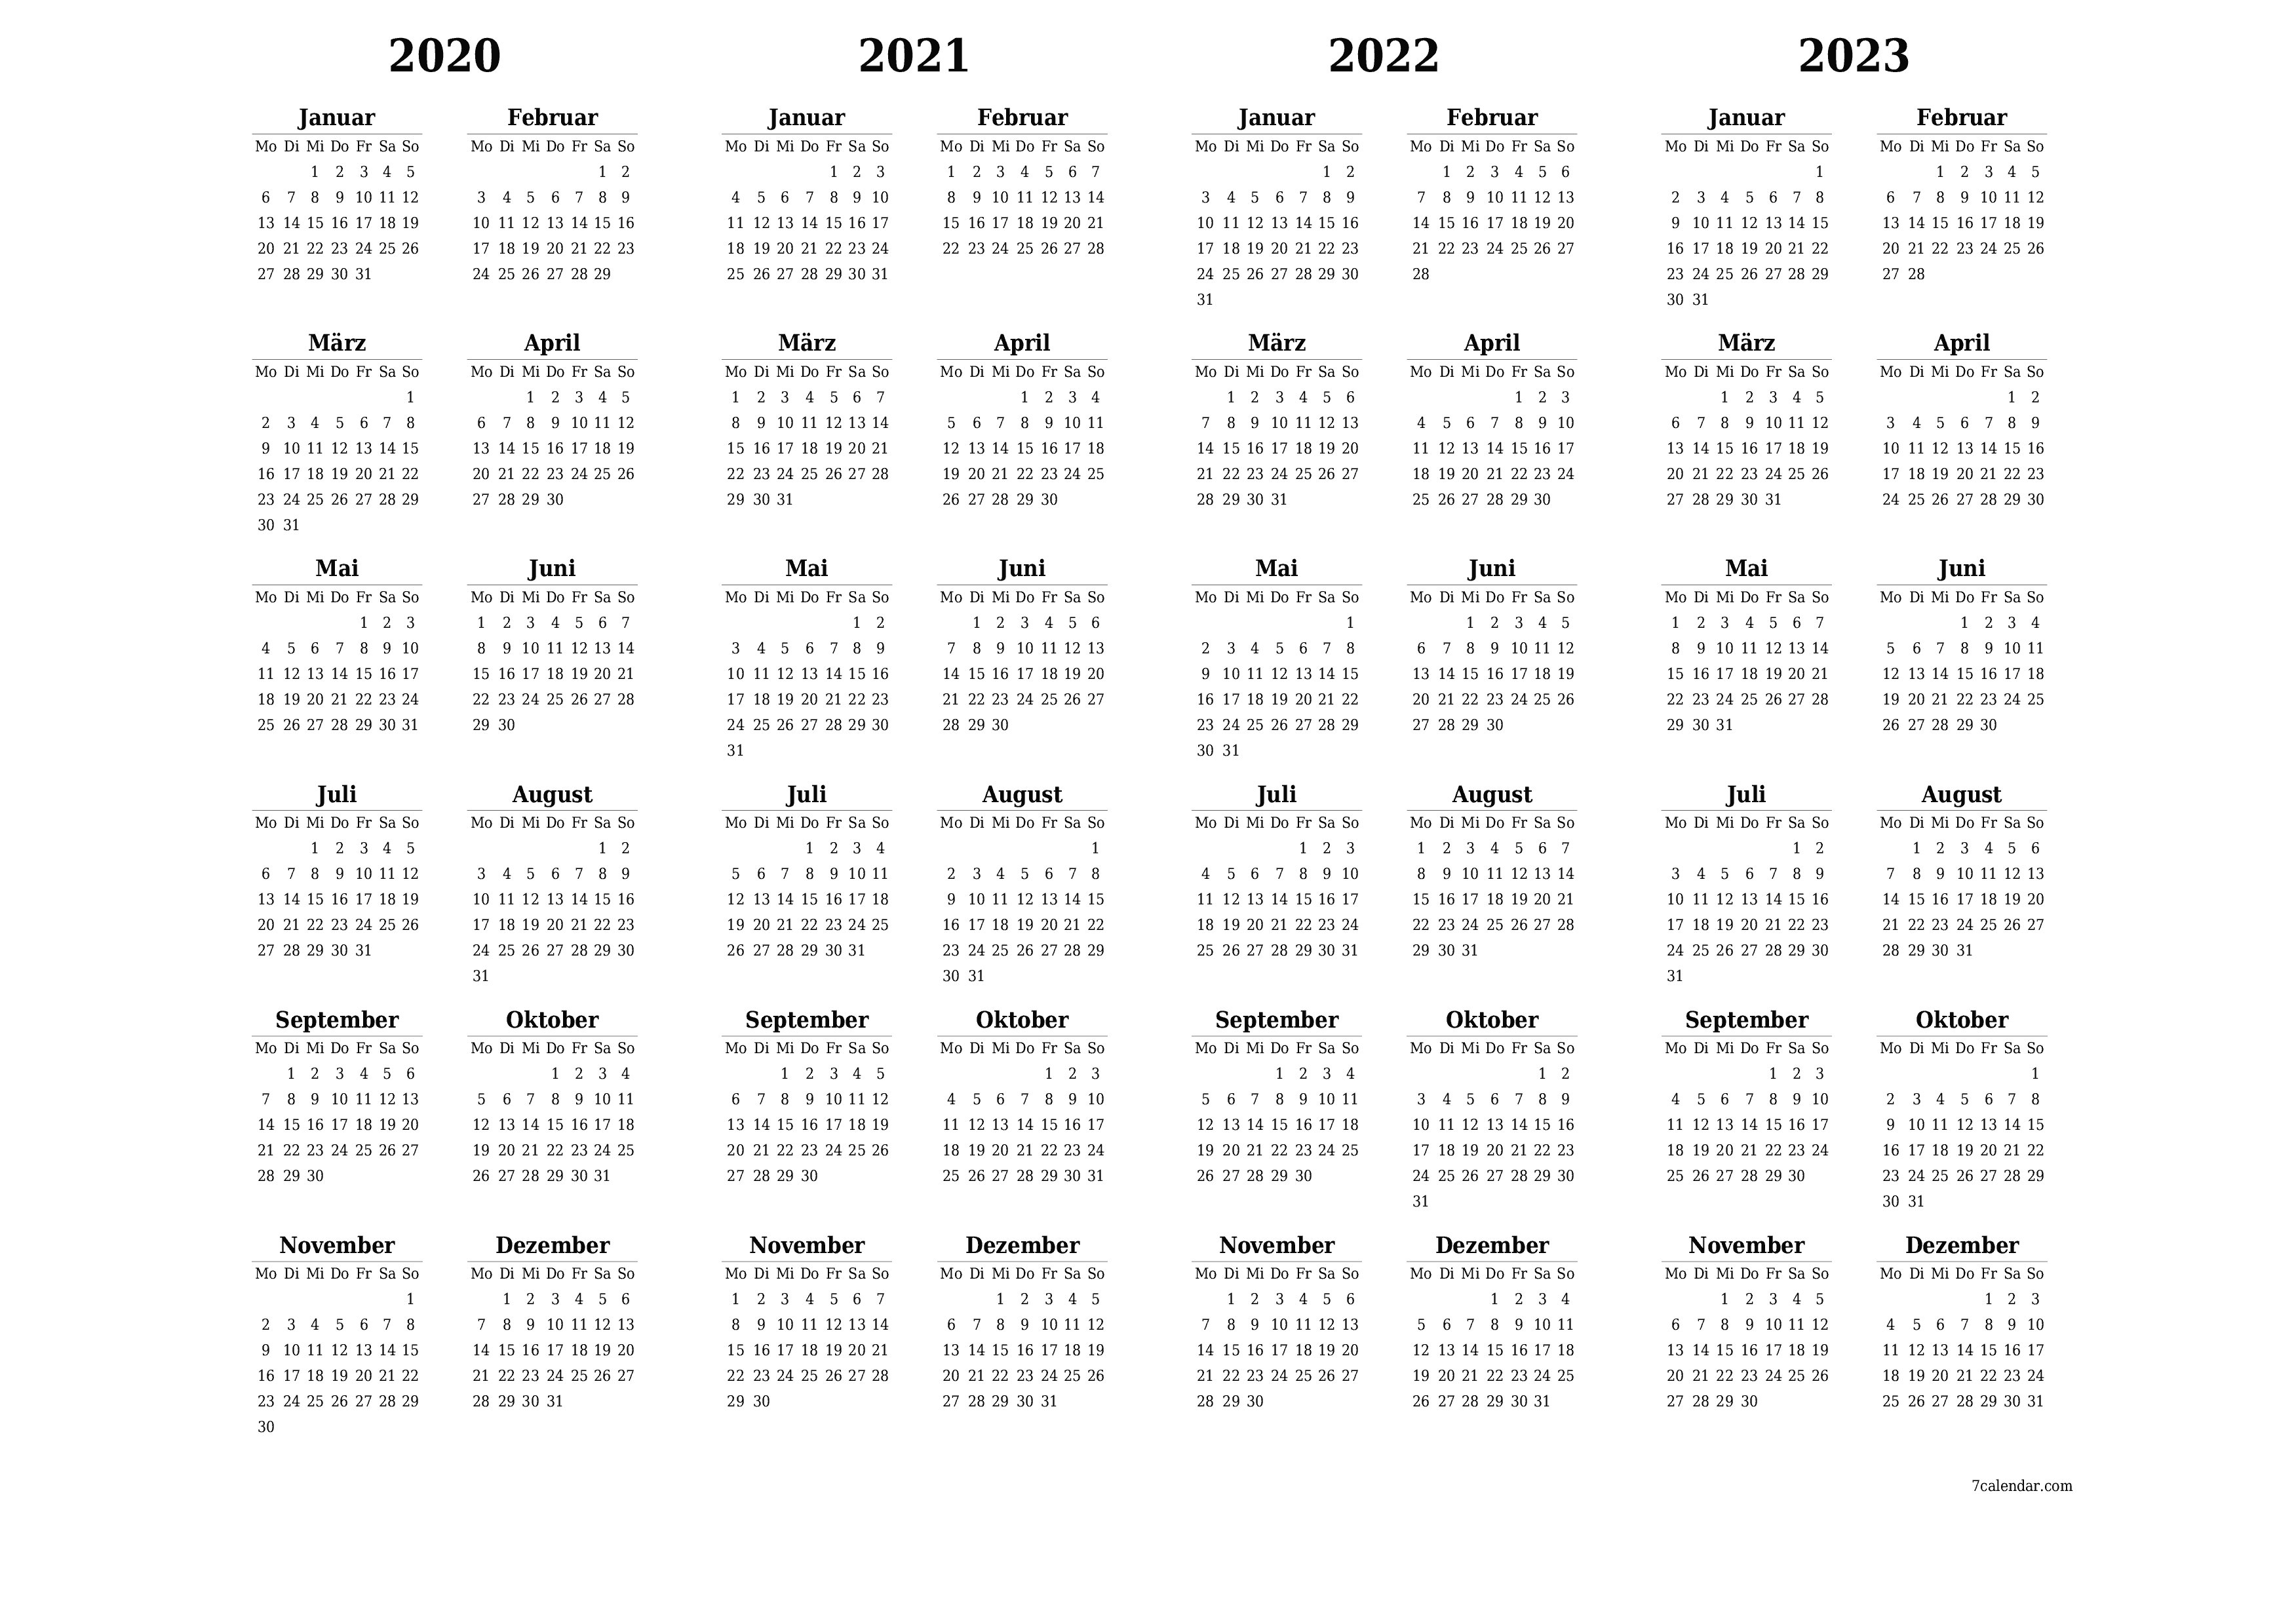 Jahresplanerkalender für das Jahr 2020, 2021, 2022, 2023 mit Notizen leeren, speichern und als PDF PNG German - 7calendar.com drucken